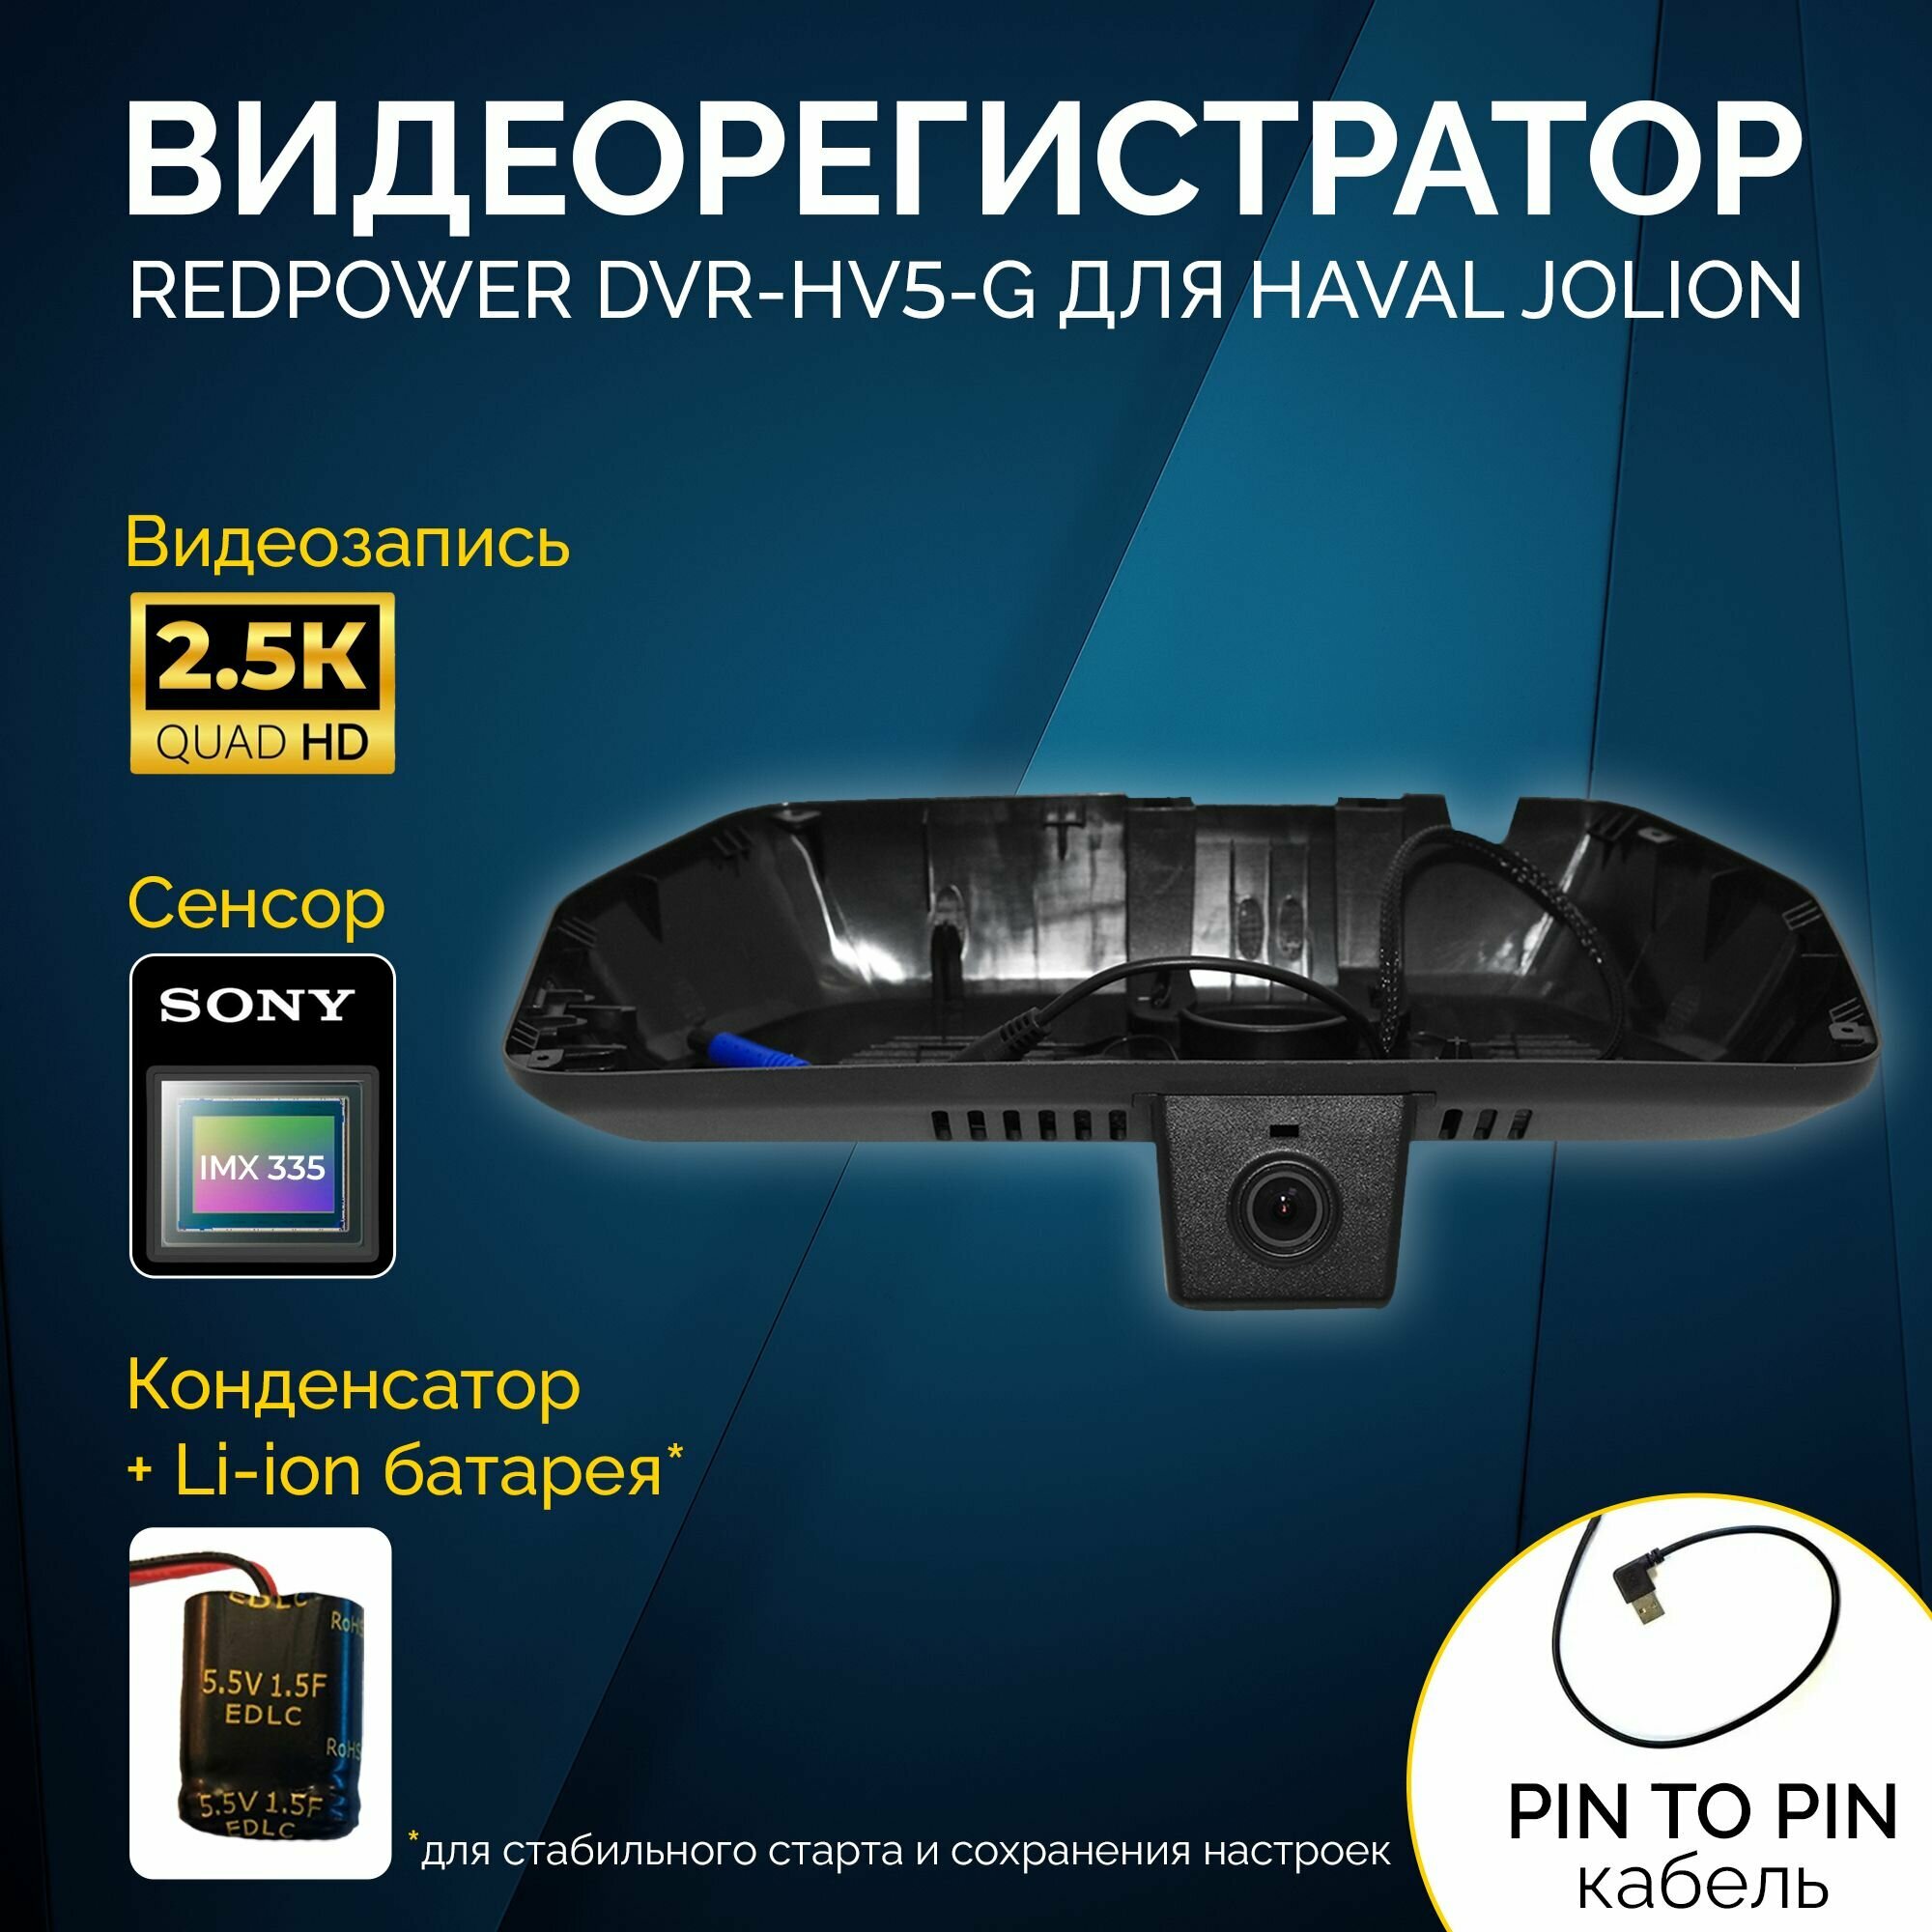 Штатный видеорегистратор Redpower DVR-HV5-G для Haval Jolion